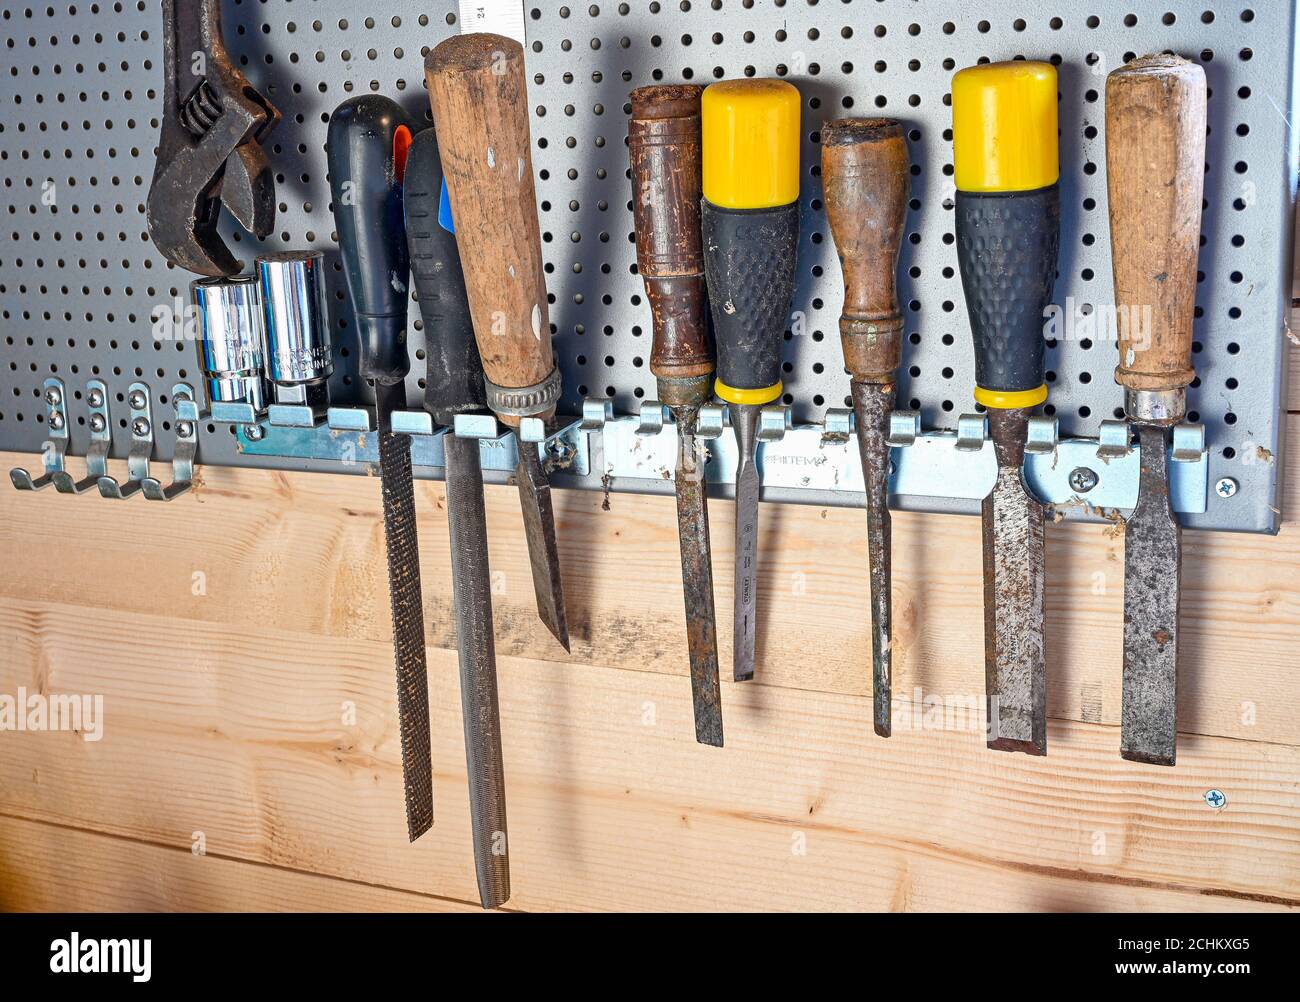 Werkzeuge, die auf einem Brett aus Metall hängen Stockfotografie - Alamy